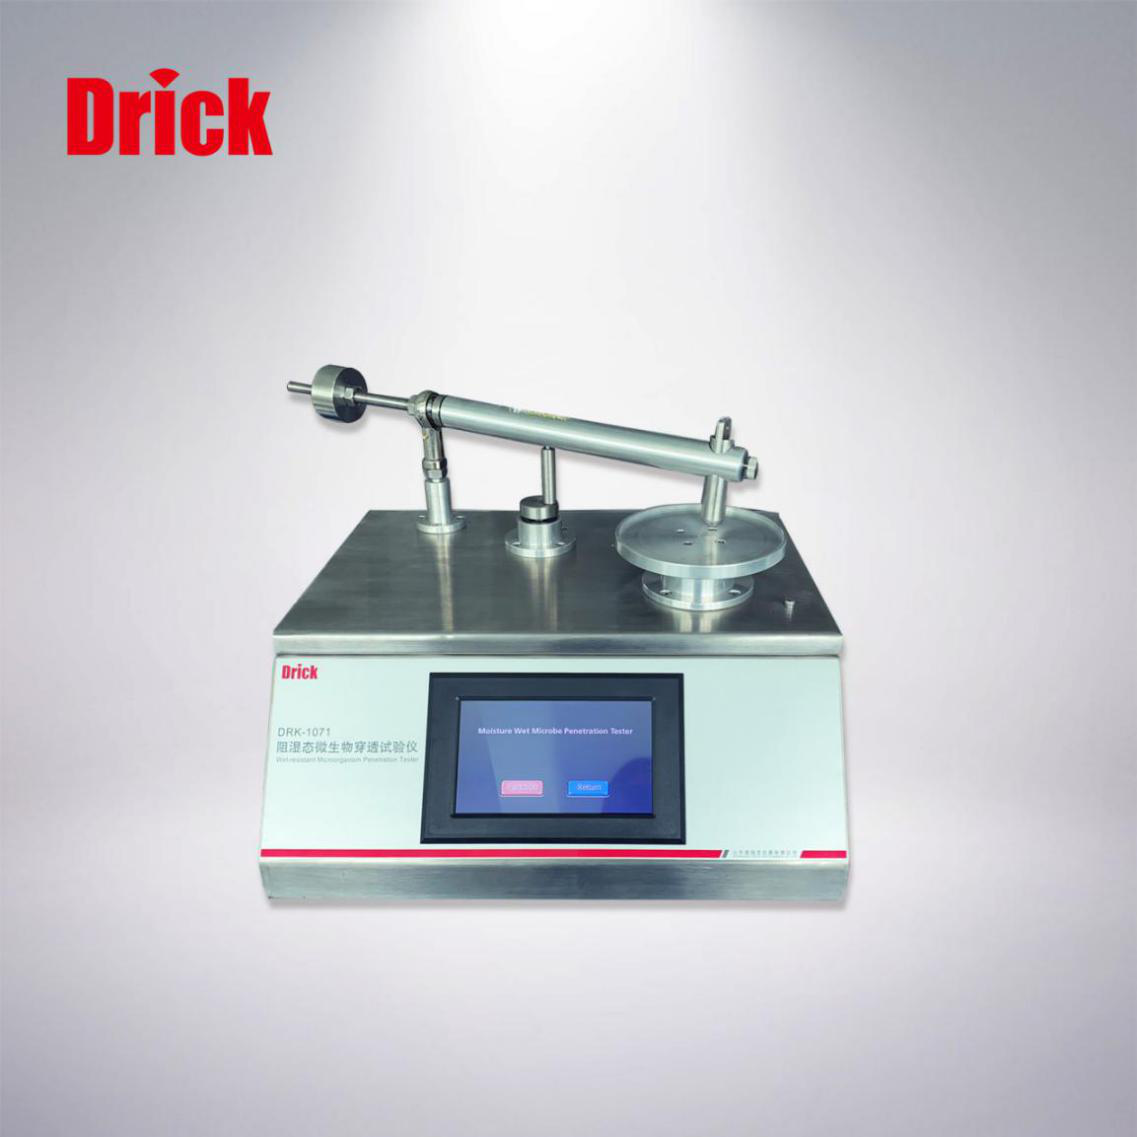 DRK-1071阻湿态微生物穿透试验仪